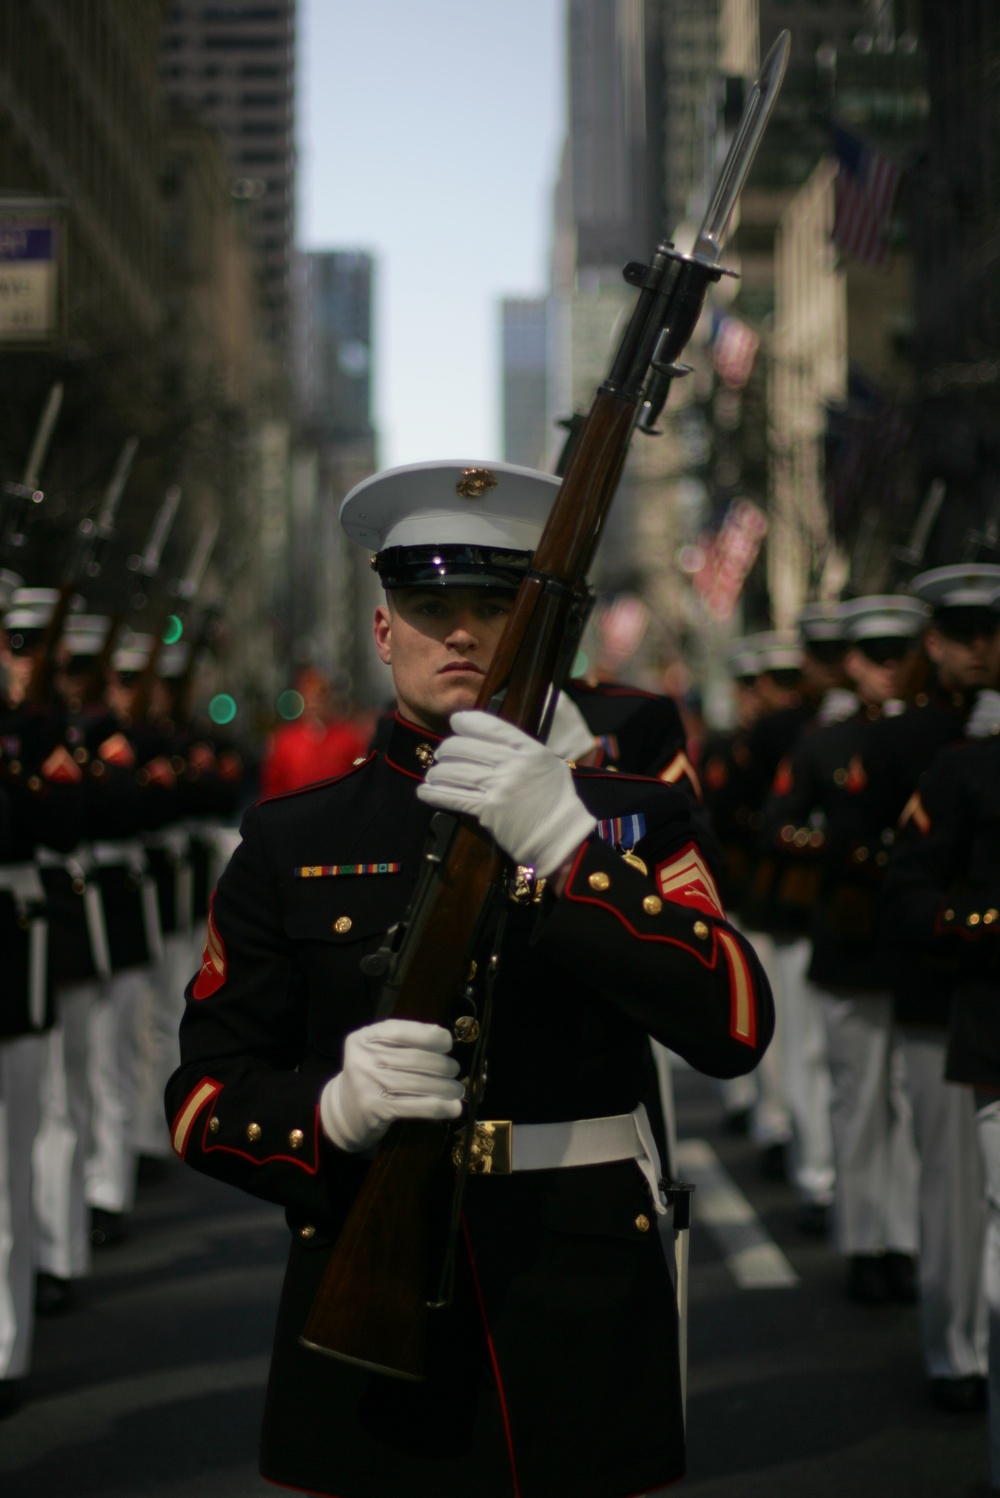 New York City St. Patrick's Day Parade